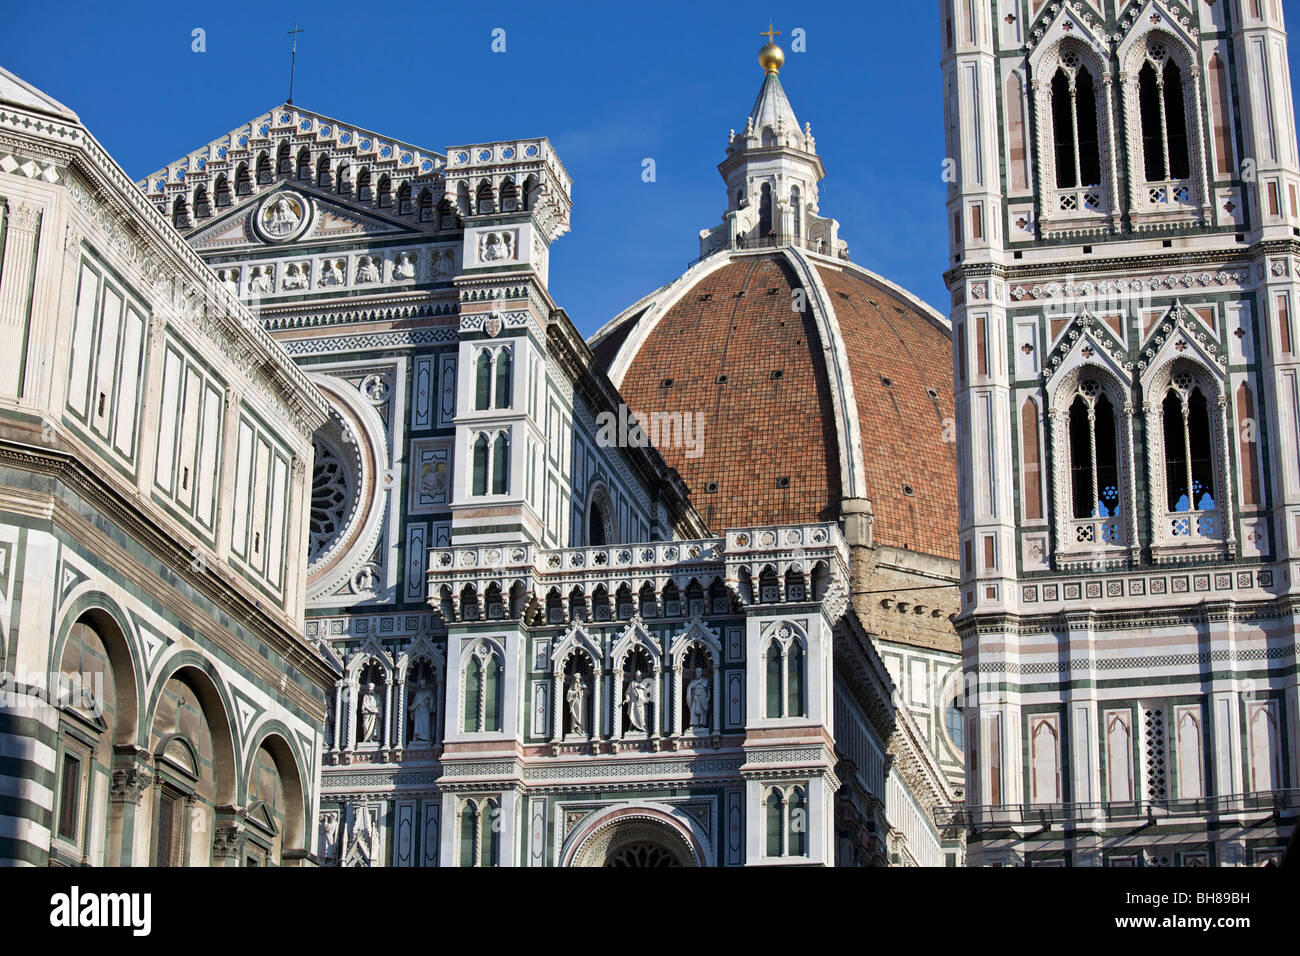 Santa Maria Del Fiore, Batistero San Giovanni, and Giotto's Campanile, Florence, Italy Stock Photo